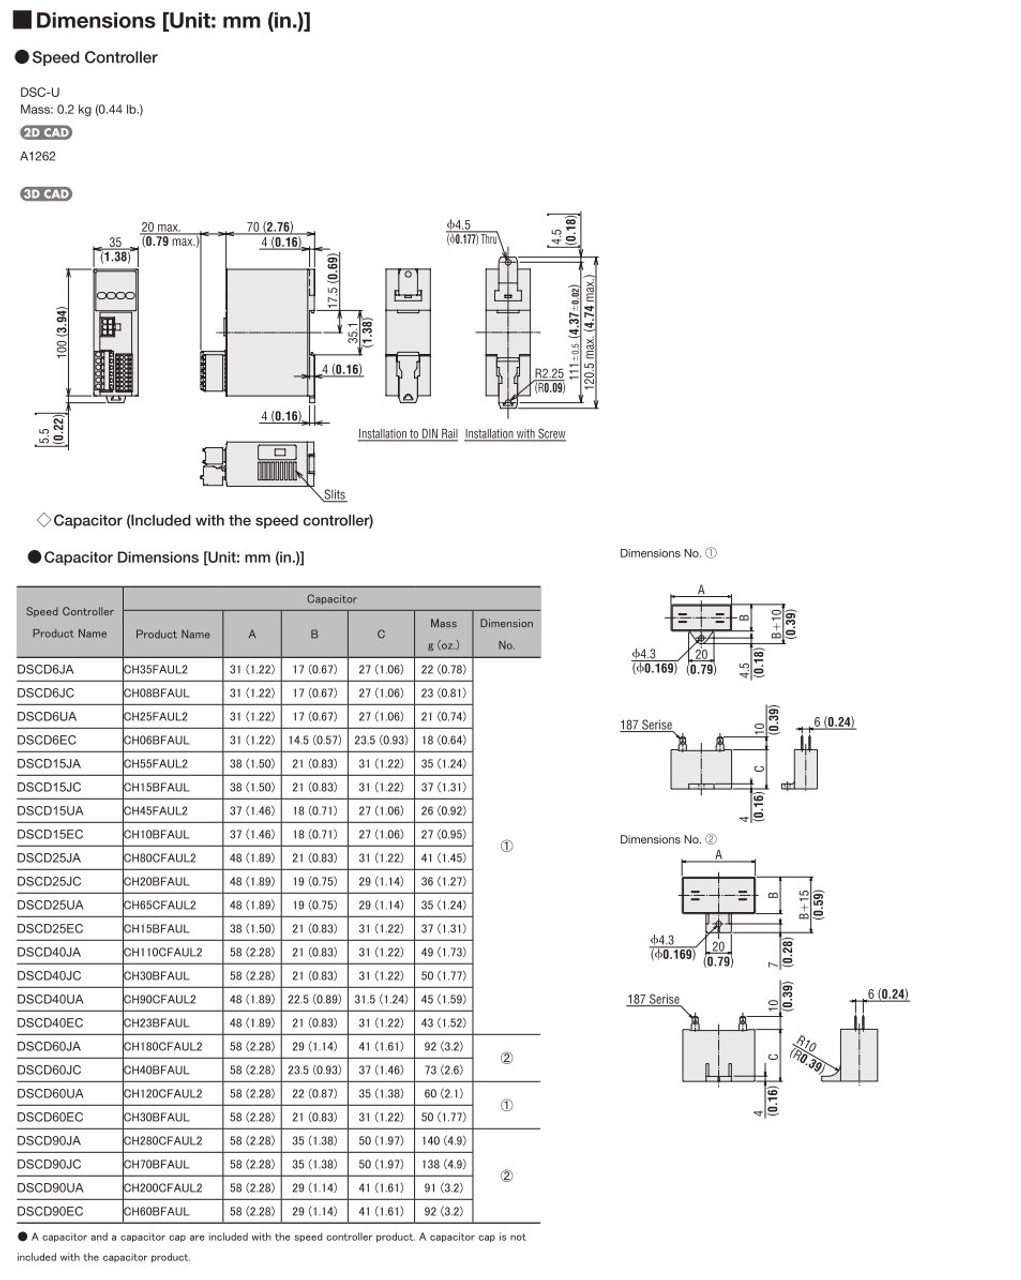 SCM315EC-50A / DSCD15EC - Dimensions